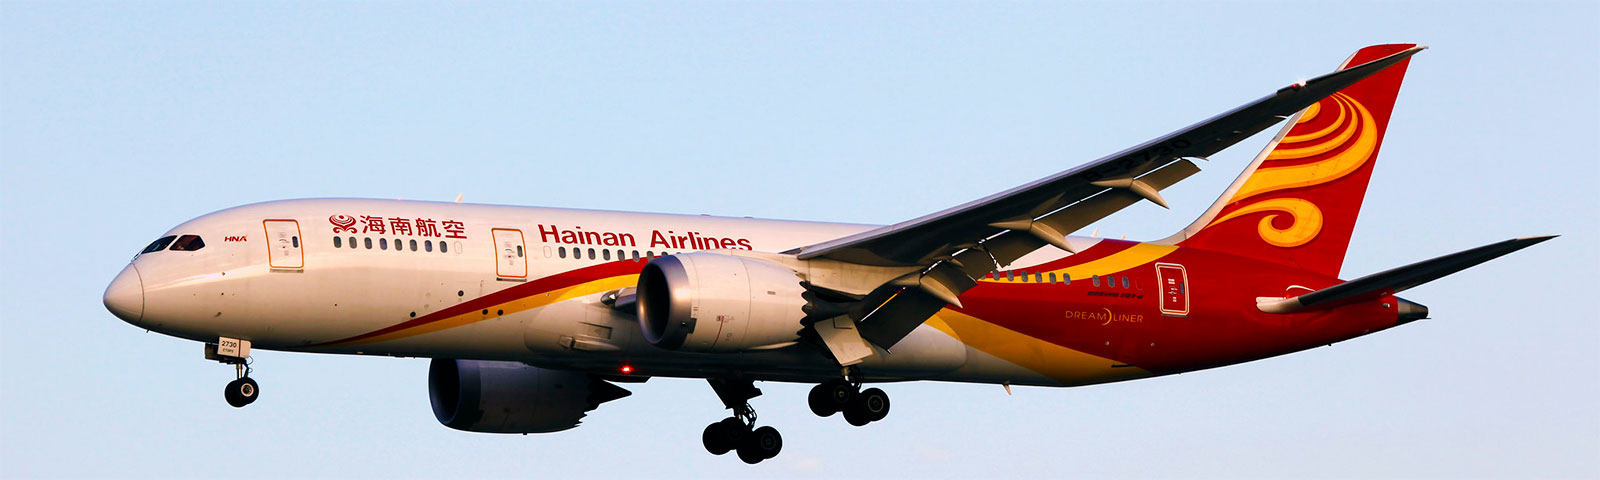 aeroplano in decollo della compagnia Hainan-Airlines